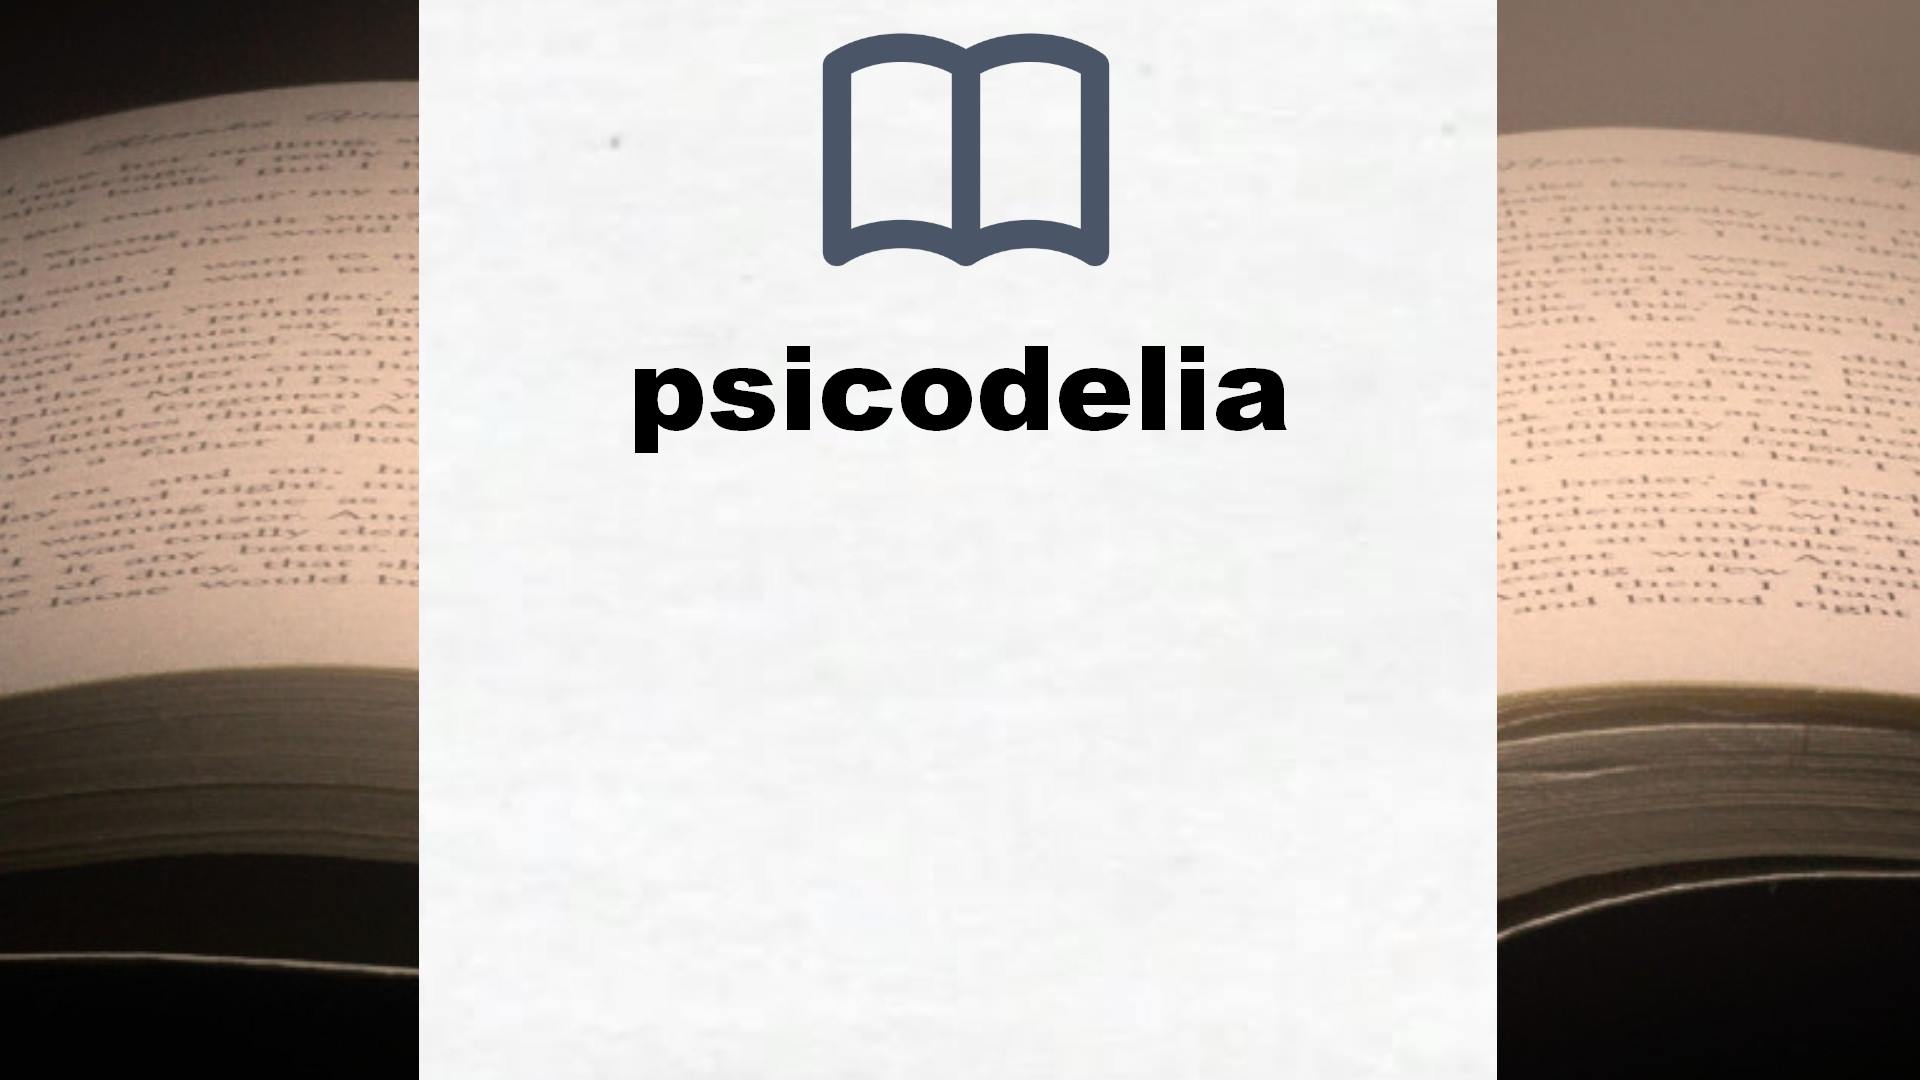 Libros sobre psicodelia